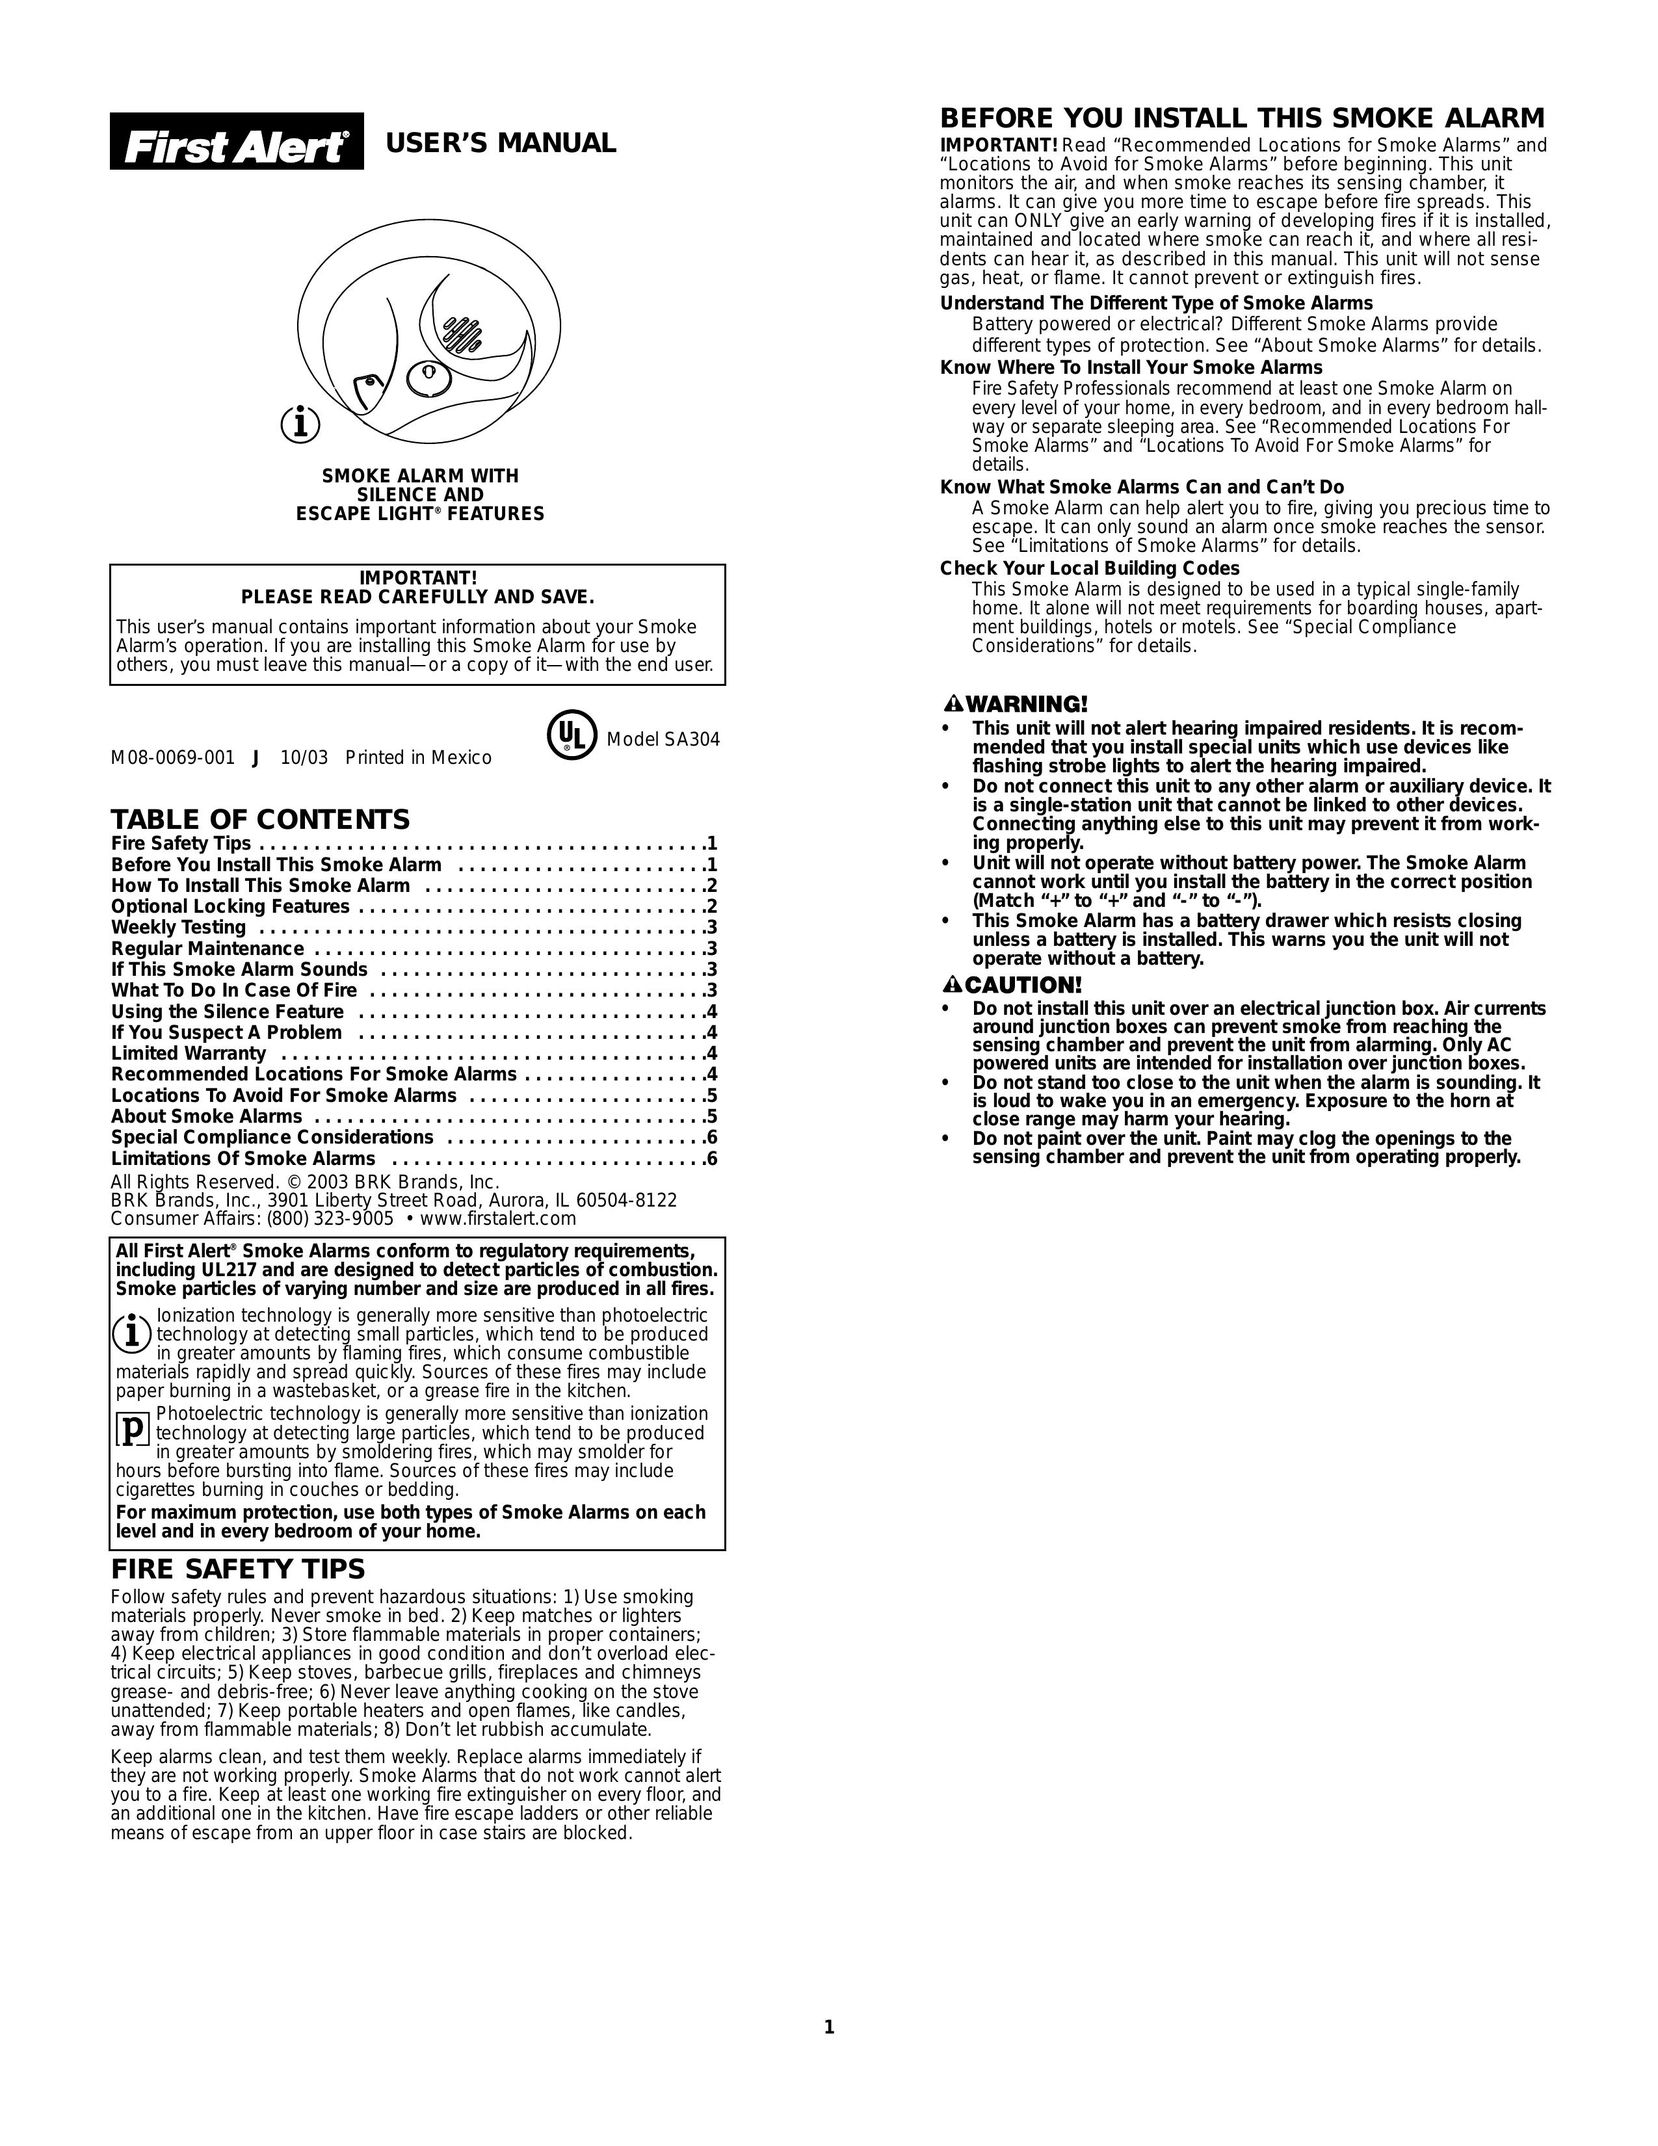 First Alert SA304 Smoke Alarm User Manual